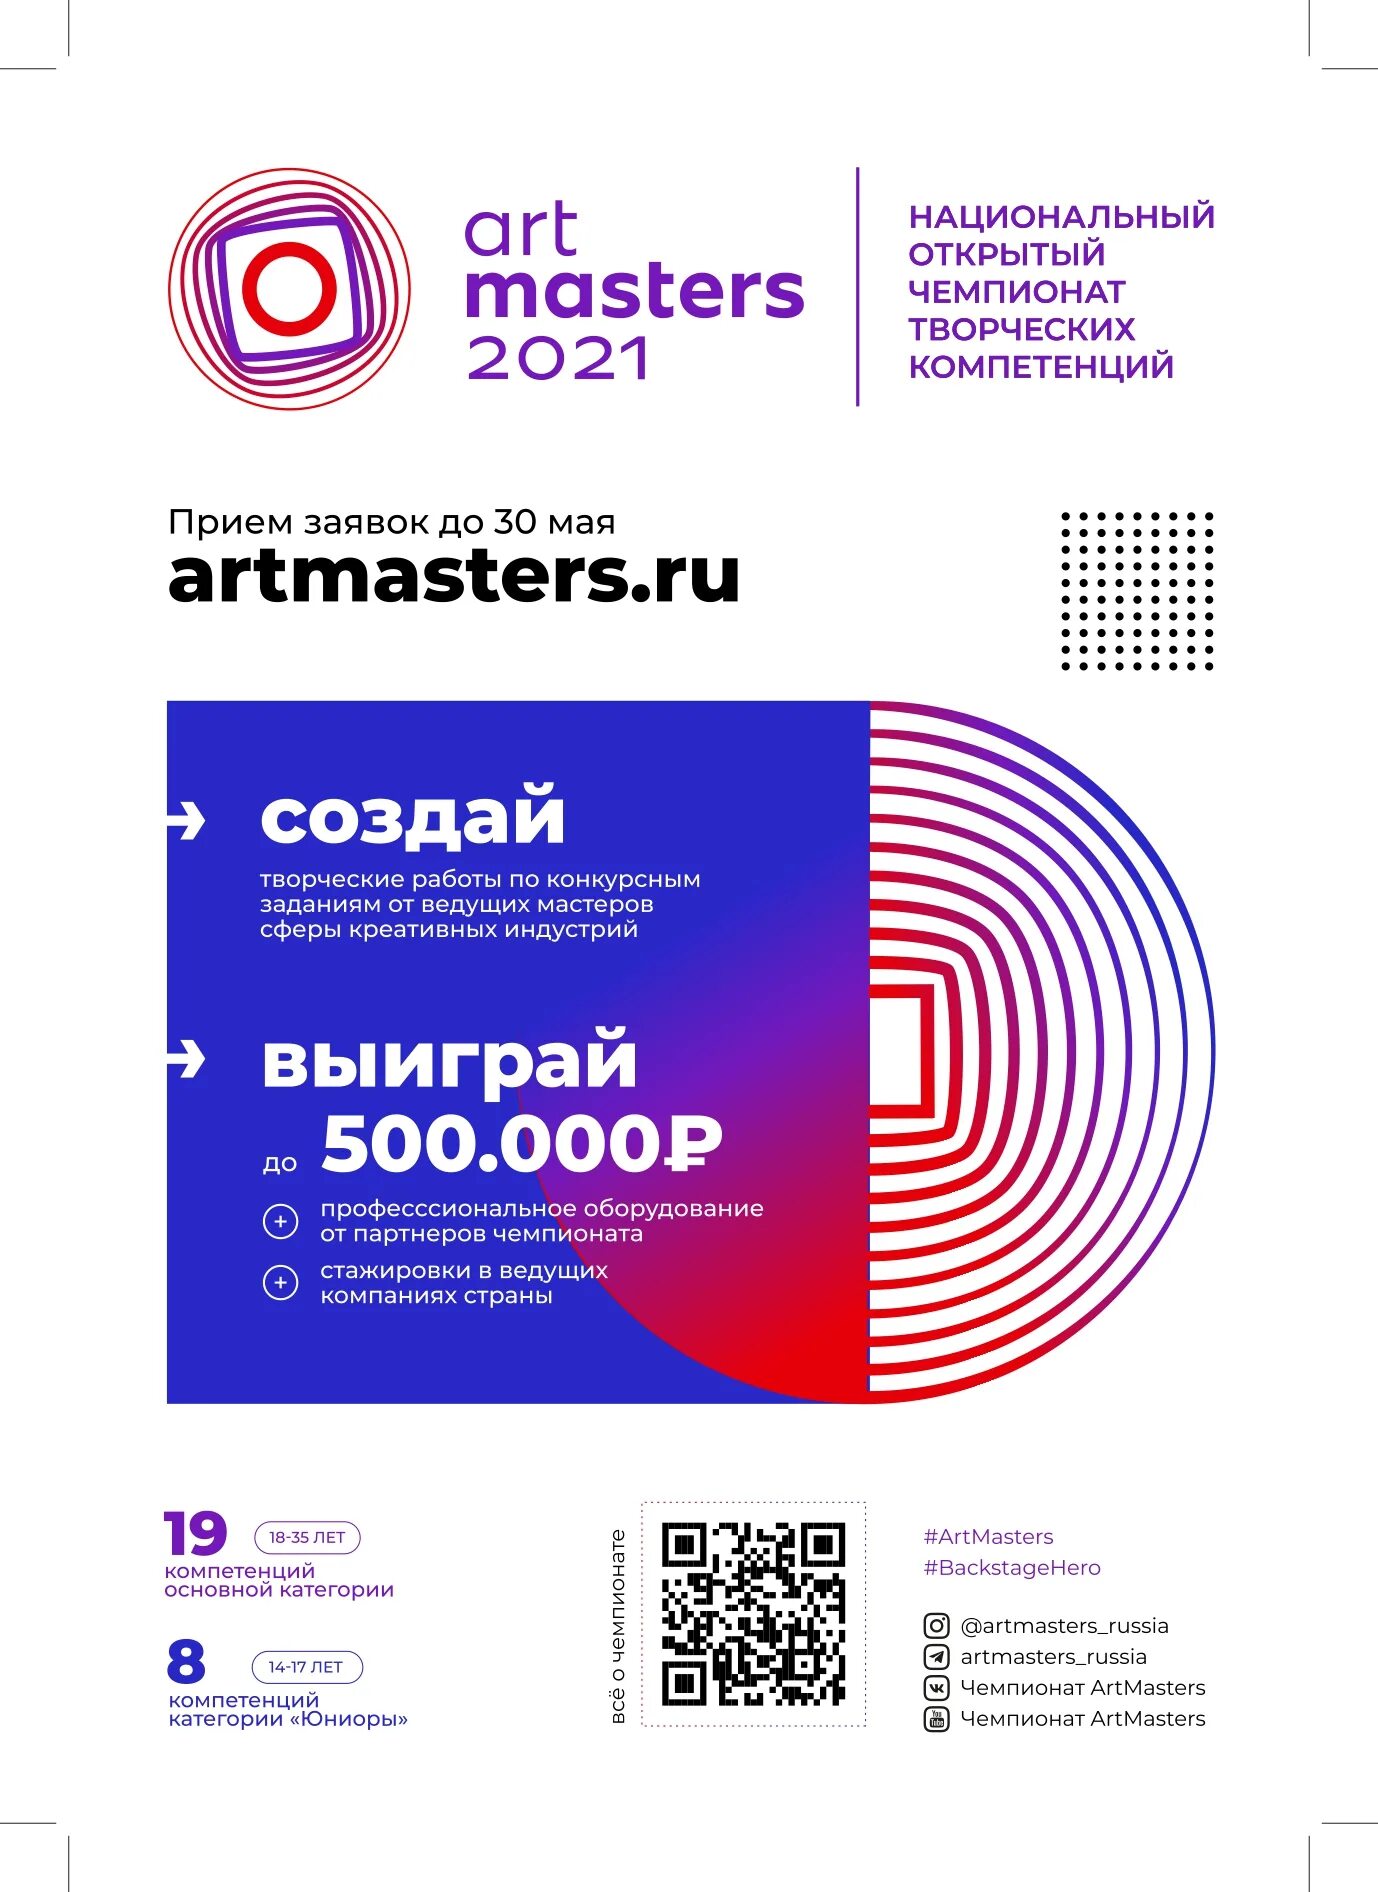 Национальный творческий чемпионат. Чемпионат Art Masters. Арт Мастерс 2021. Чемпионат АРТМАСТЕР. Artmasters 2022 Чемпионат творческих компетенций.